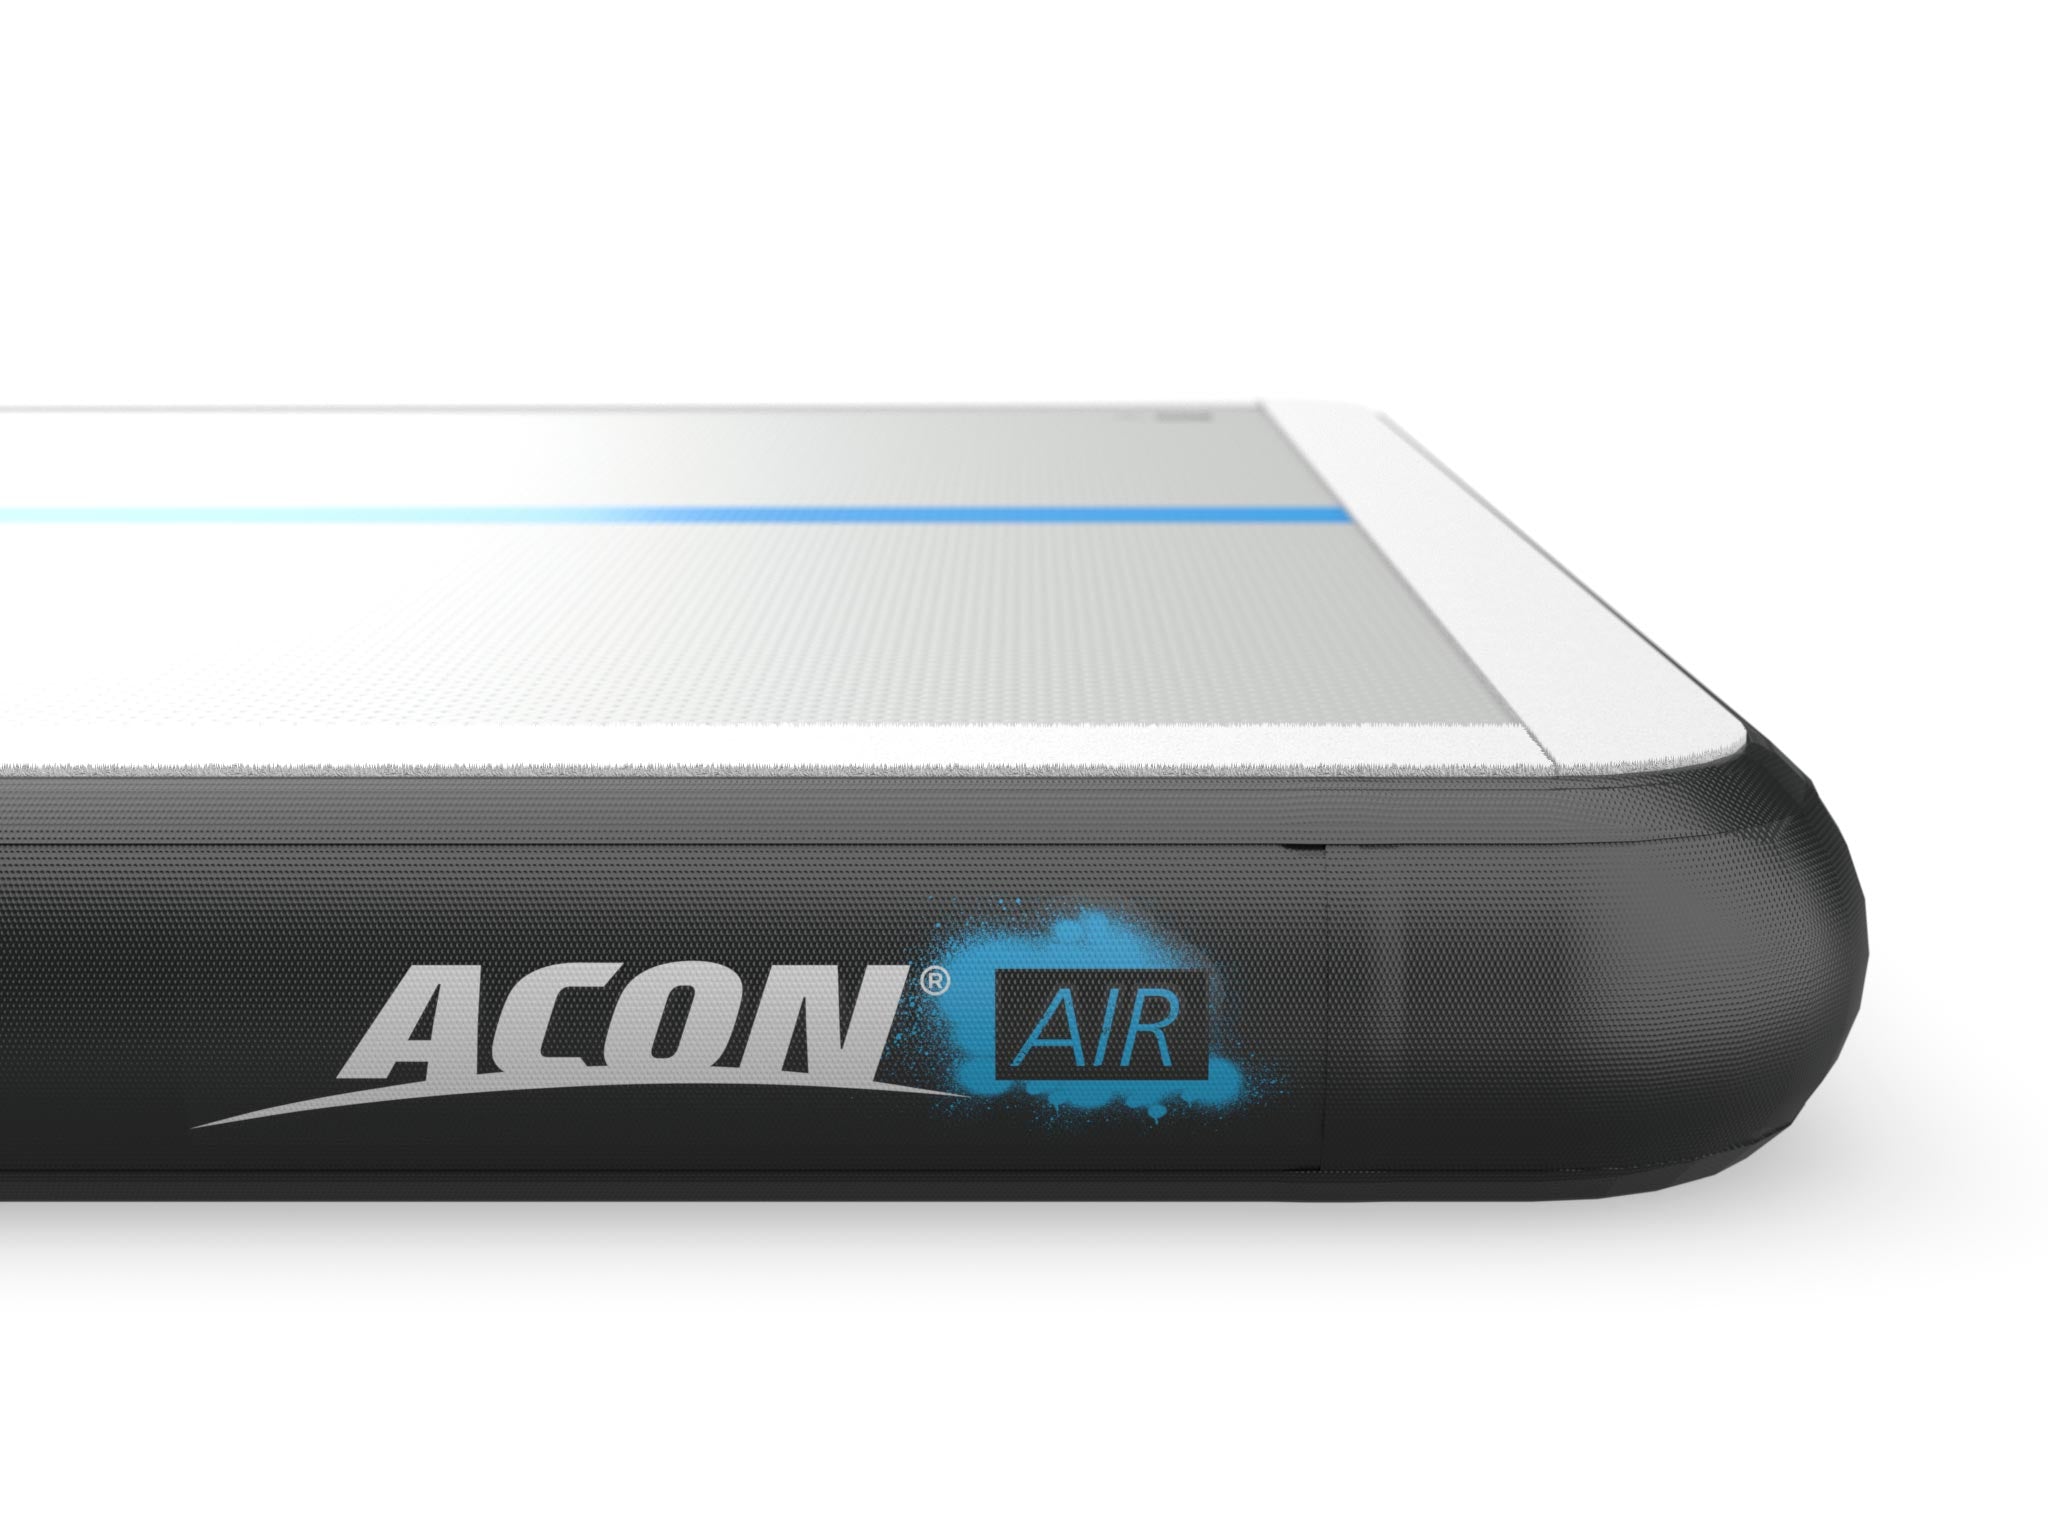 ACON AirTrack detail - acon24.com - ACON logo